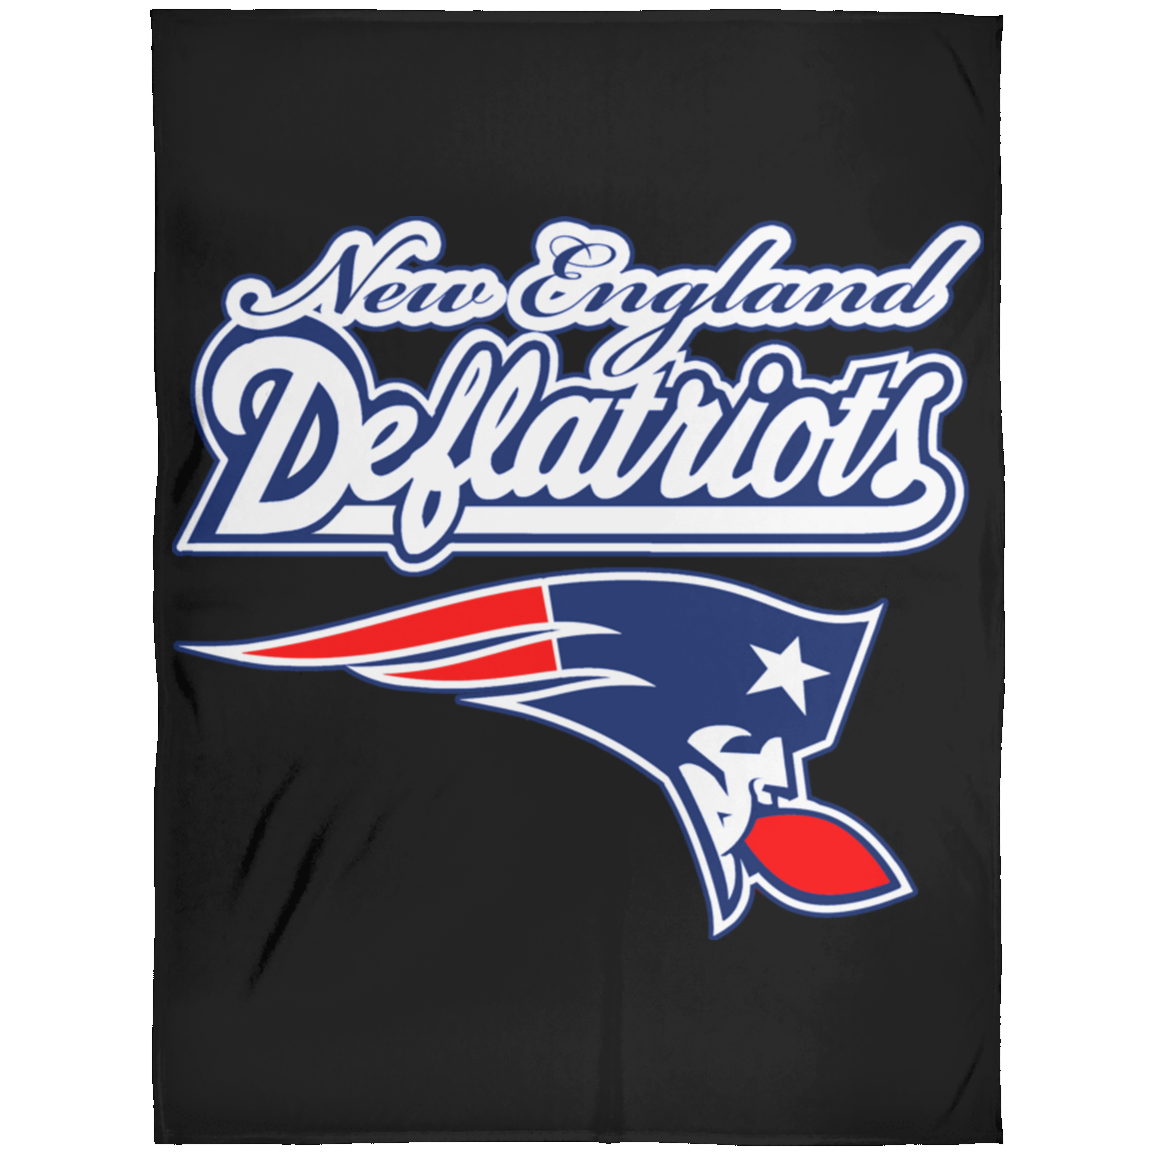 ArtichokeUSA Custom Design. New England Deflatriots. New England Patriots Parody. Fleece Blanket 60x80